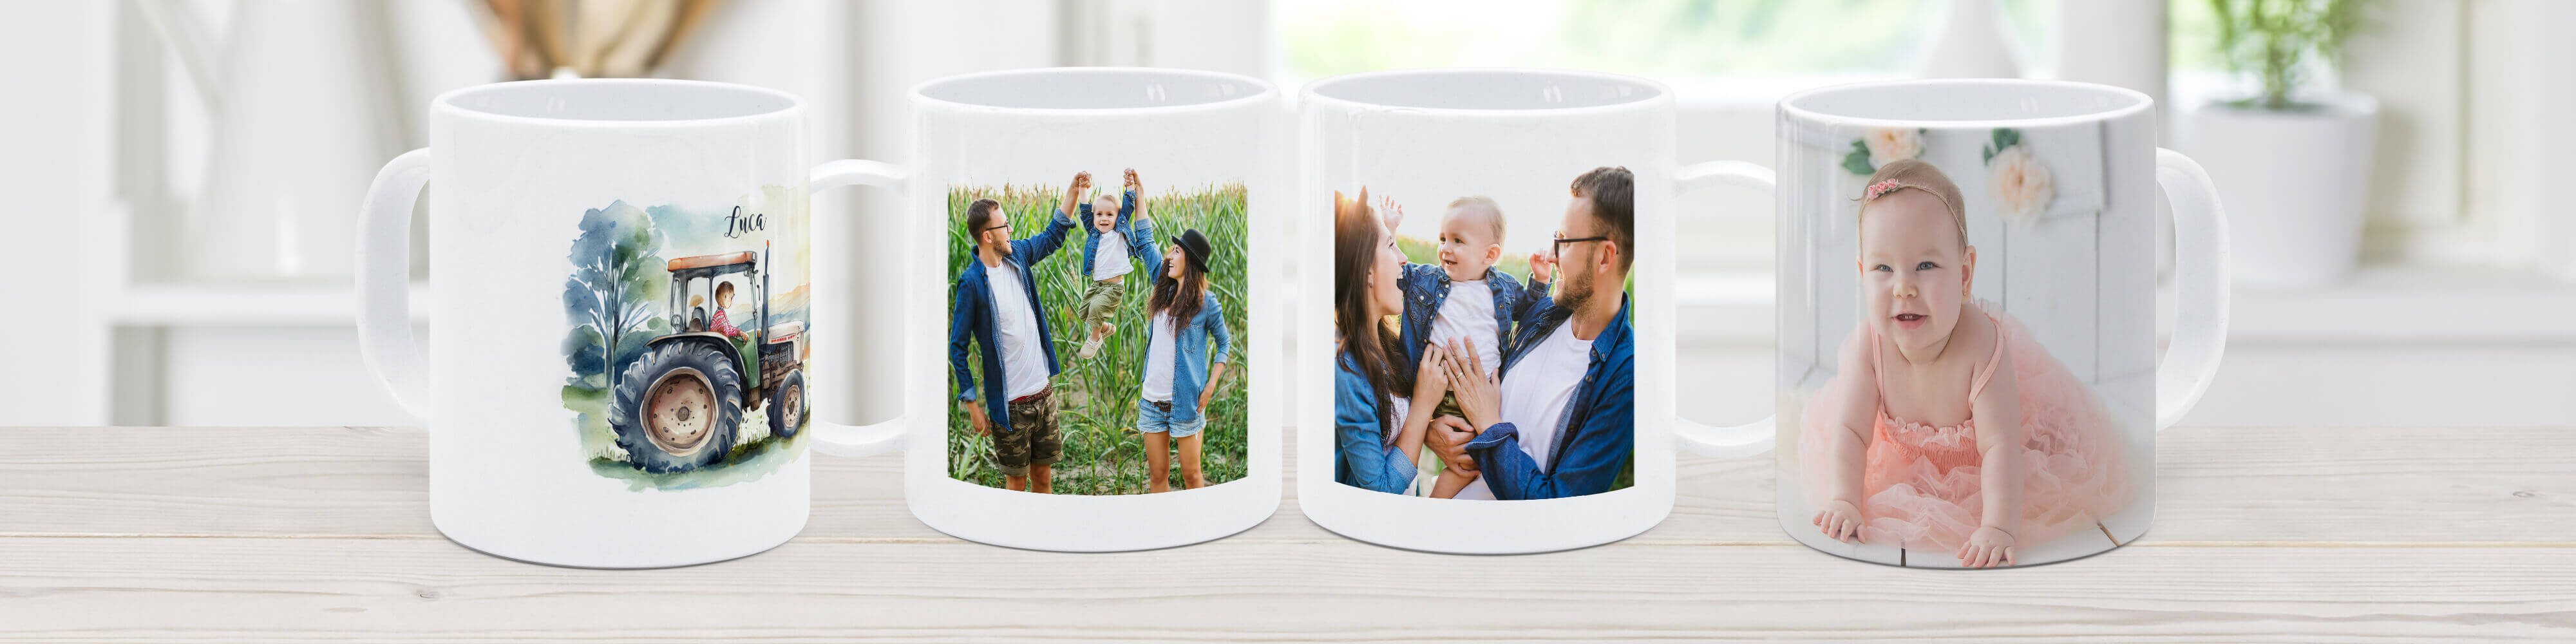 Bruchfeste und kindgerechte Tassen mit eigenem Foto selbst gestalten